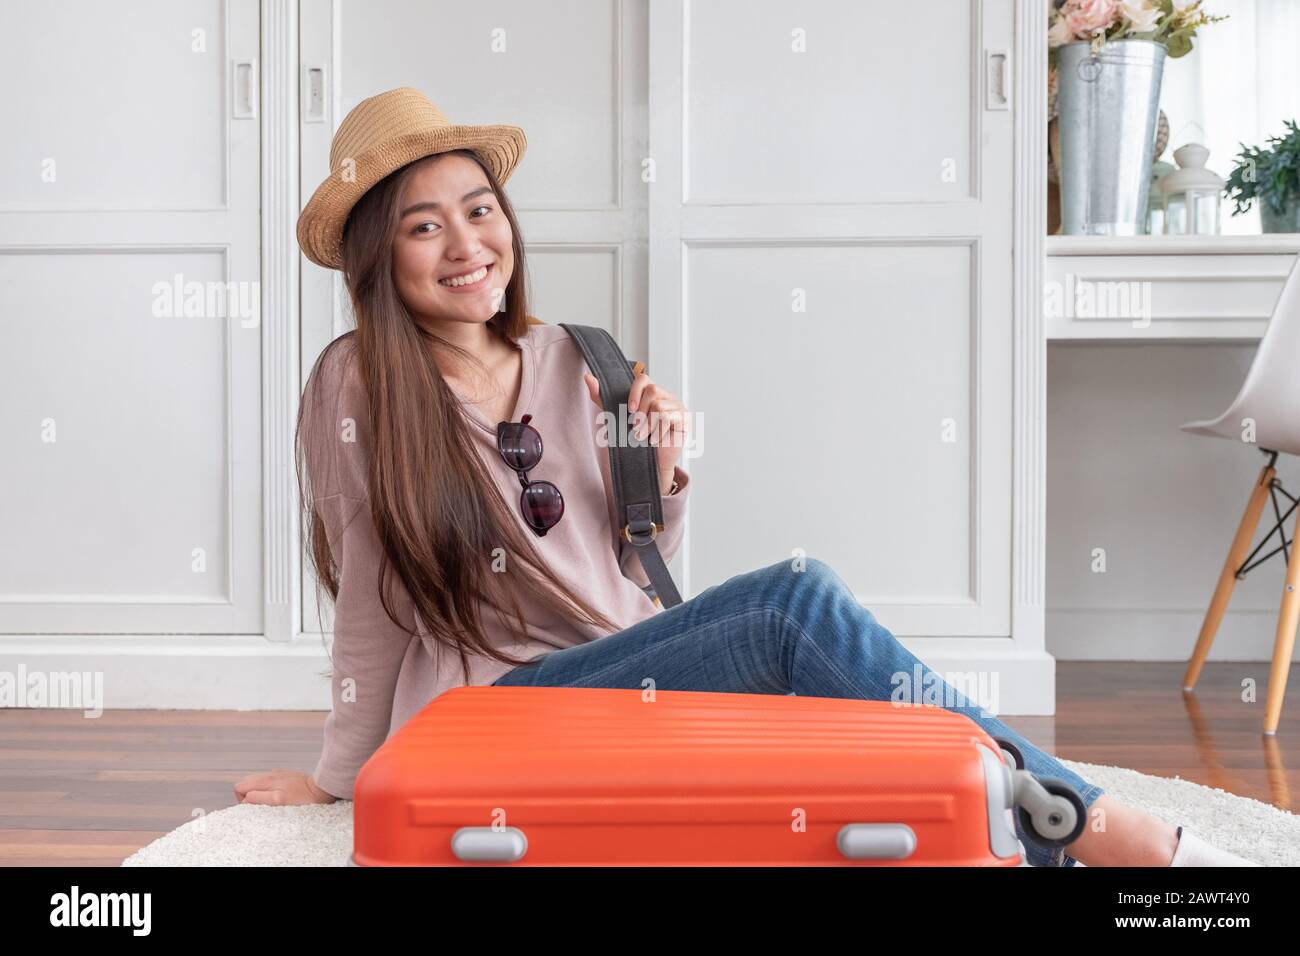 Una joven mujer asiática que viaja prepara ropa y cosas en una maleta naranja para unas vacaciones en casa. Concepto de viaje para mochileros Foto de stock